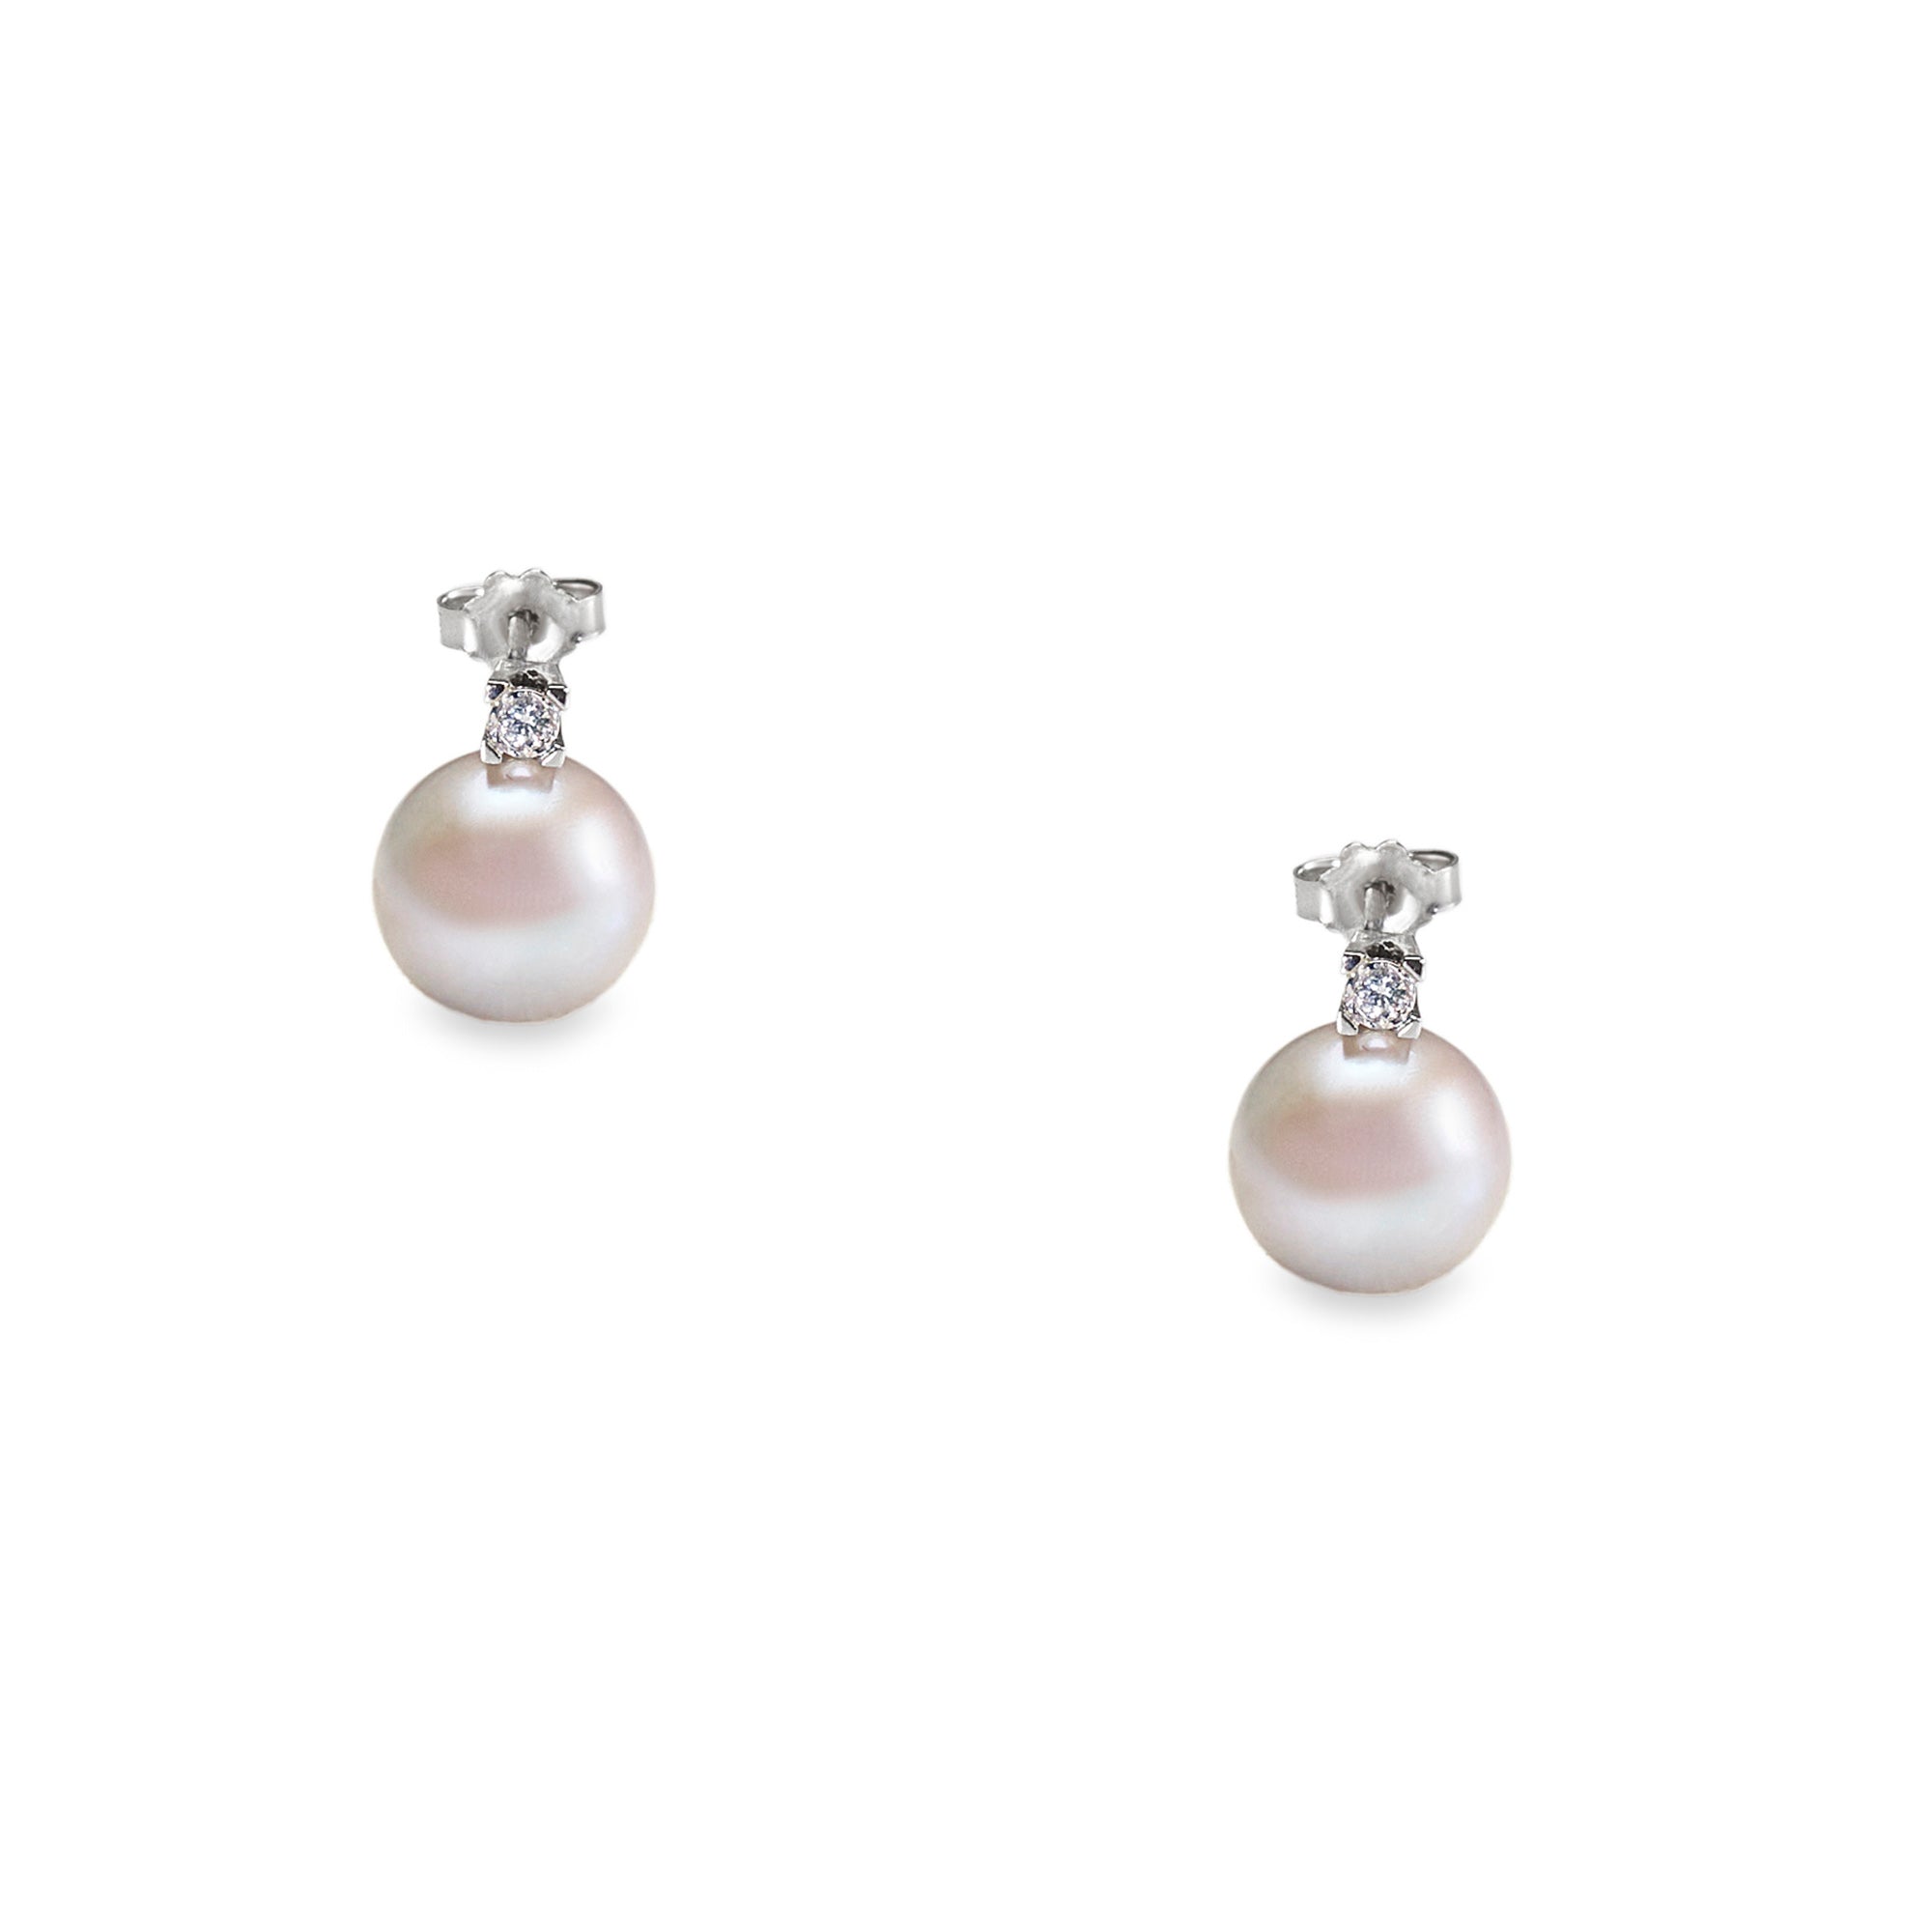 Cercei aur alb cu perle apa dulce 11-12 mm si diamante 0.06 ct